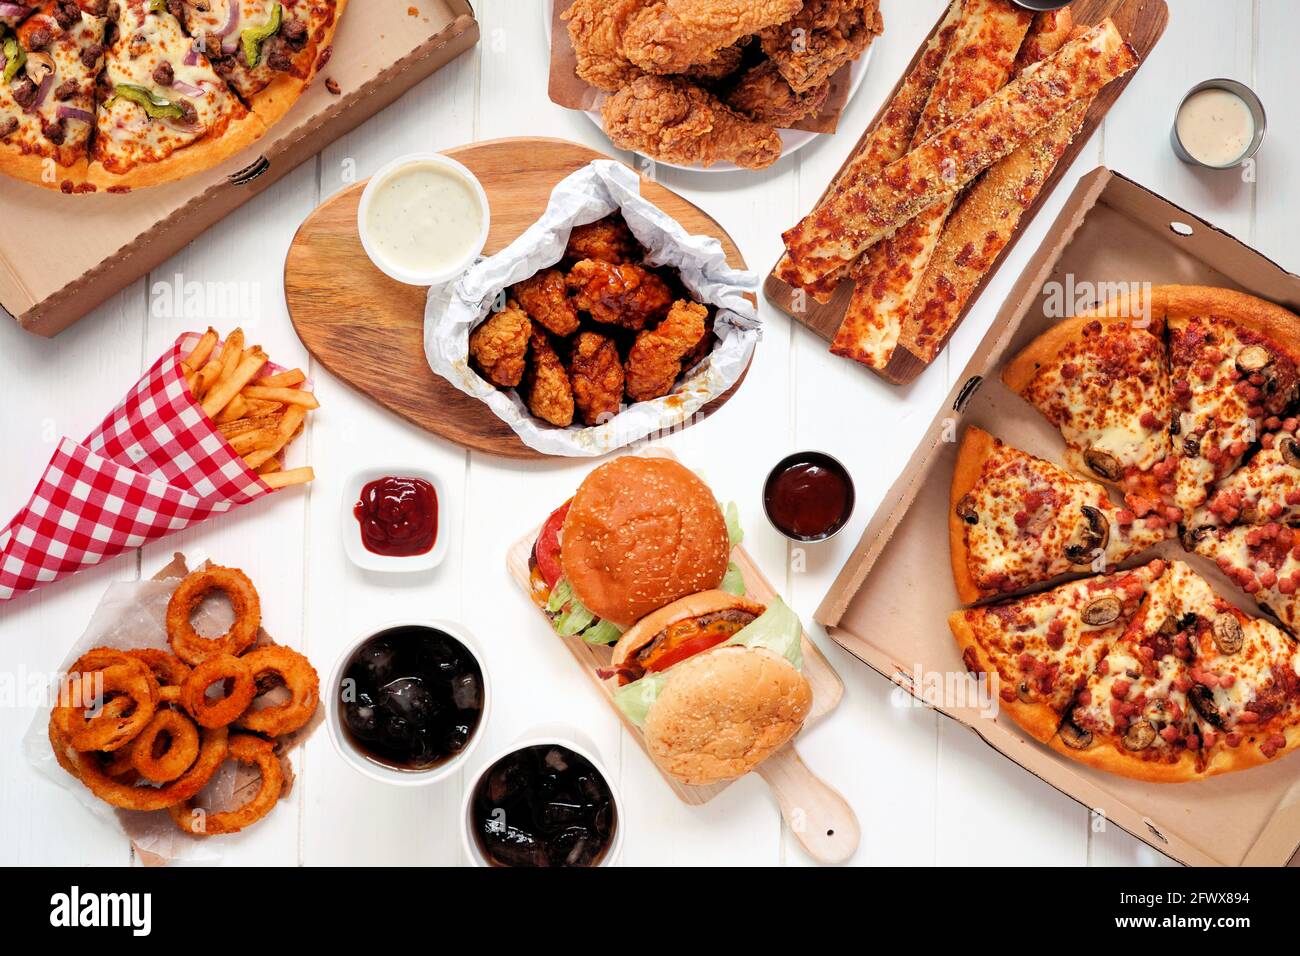 Escena de mesa tipo buffet de comida para llevar o de reparto. Pizza, hamburguesas, pollo frito y sus costados. Vista superior sobre un fondo de madera blanco. Foto de stock